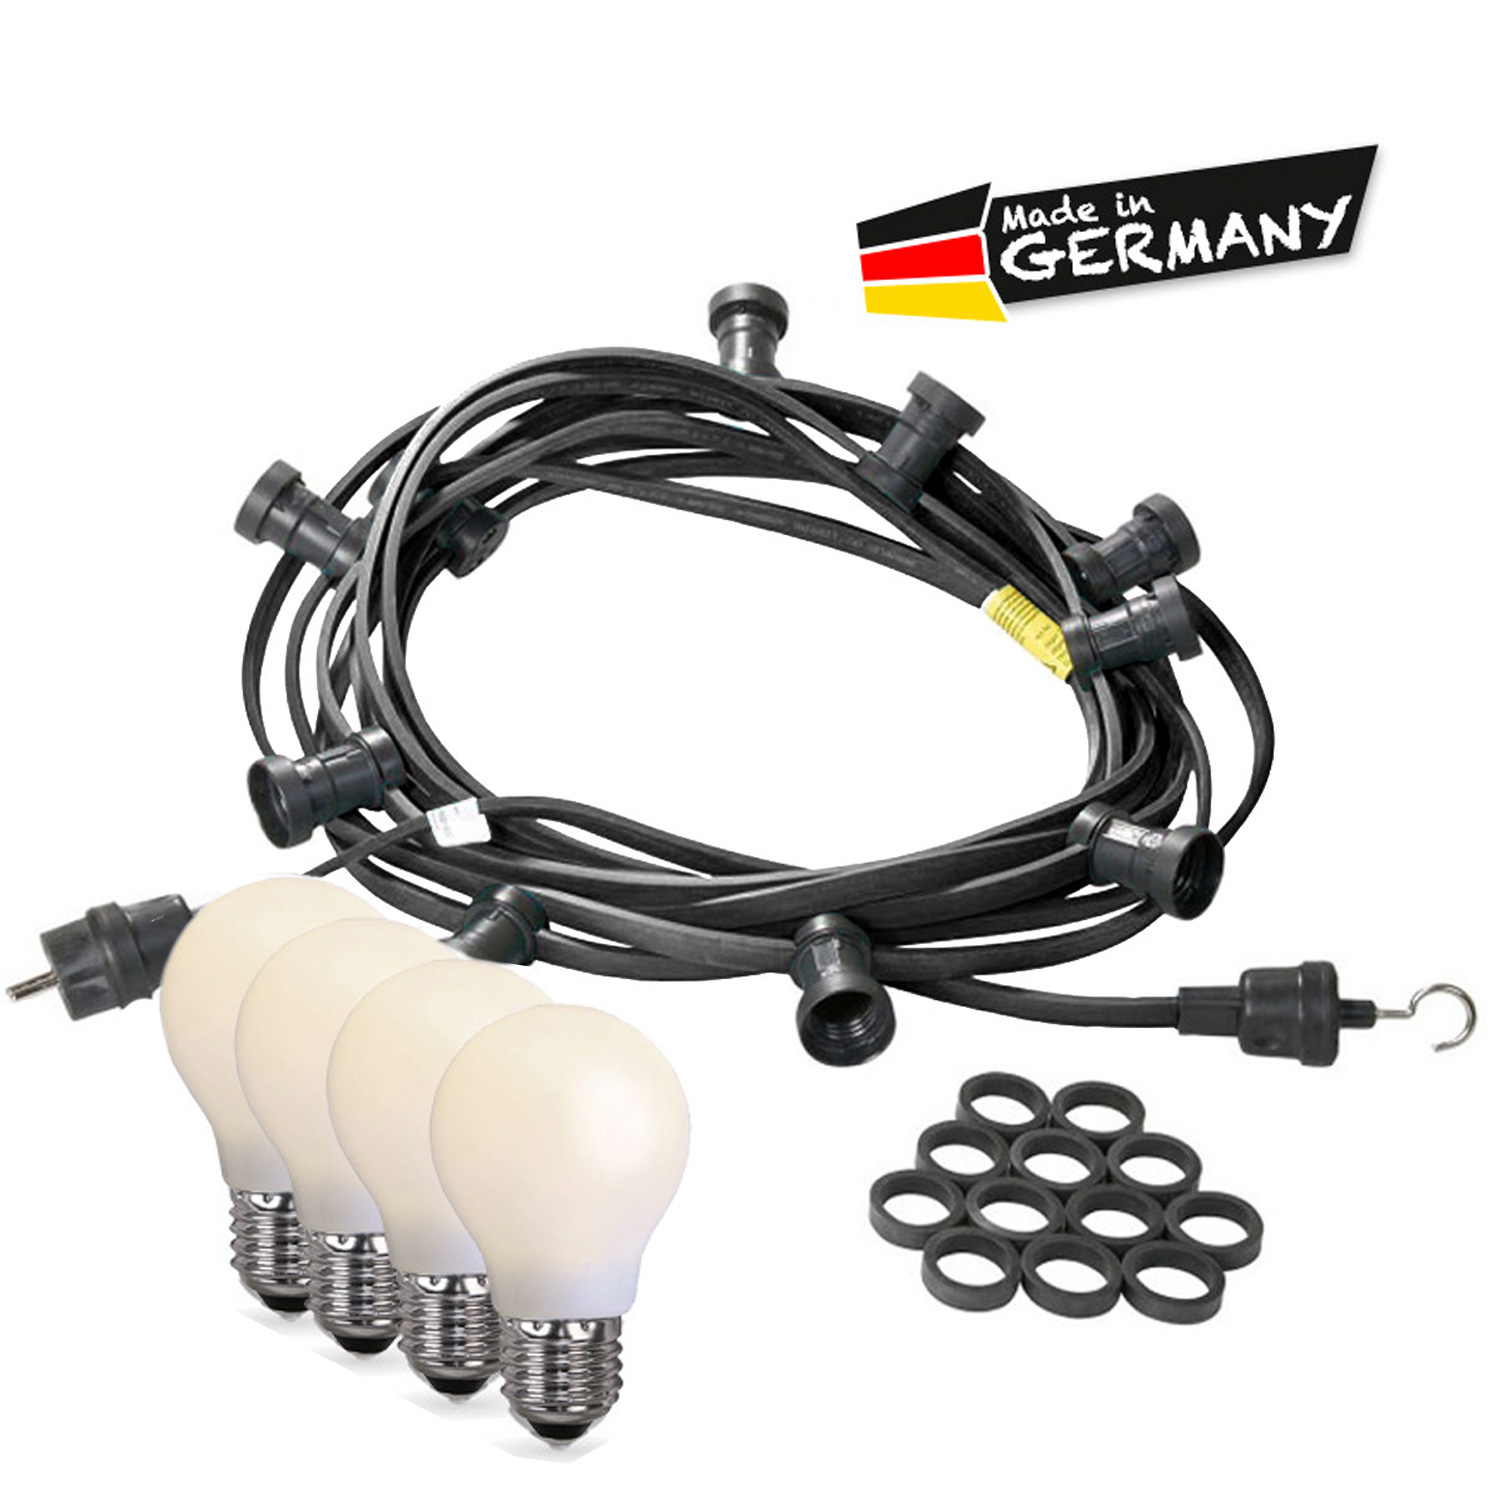 Illu-/Partylichterkette 50m - Außen - Made in Germany - 50 bruchfeste opale LED Tropfenlampen